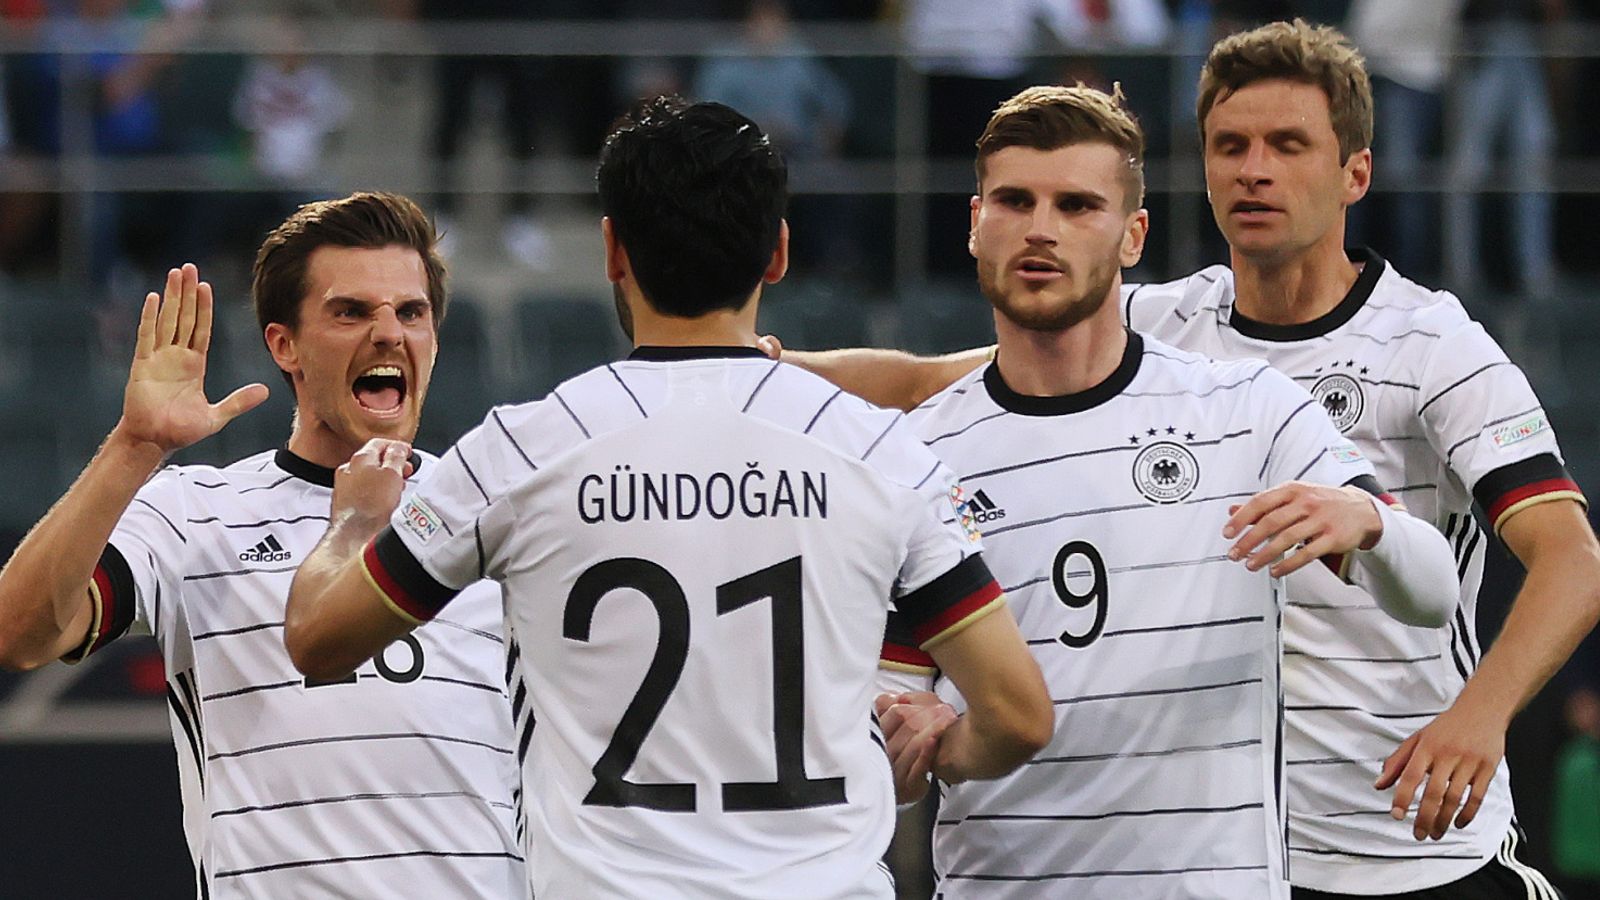 La Germania ha segnato cinque gol per umiliare l’Italia campione d’Europa;  Inghilterra sconfitta dall’Ungheria – Girone Nations League |  Notizie di calcio